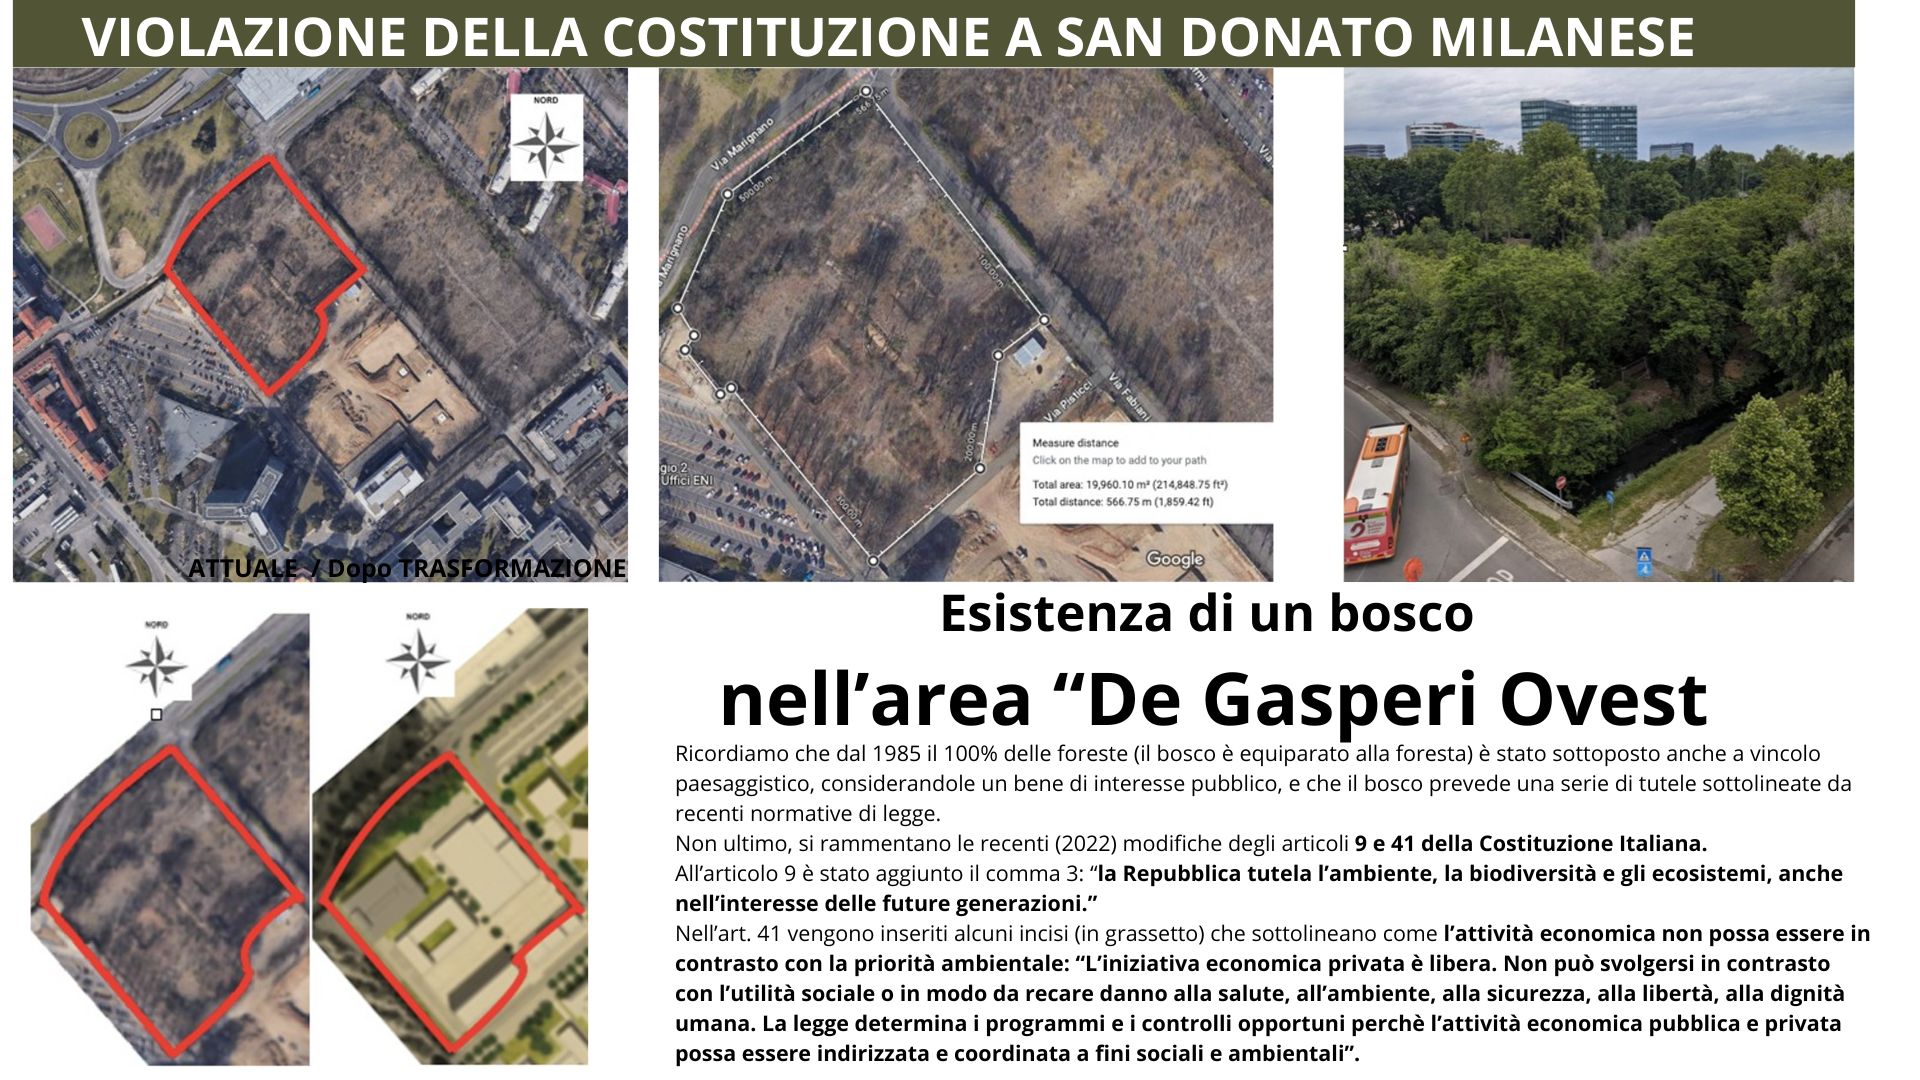 Violazione della Costituzione Italiana a San Donato Milanese - Bsco Urbano sta per essere distrutto sul De Gasperi Ovest